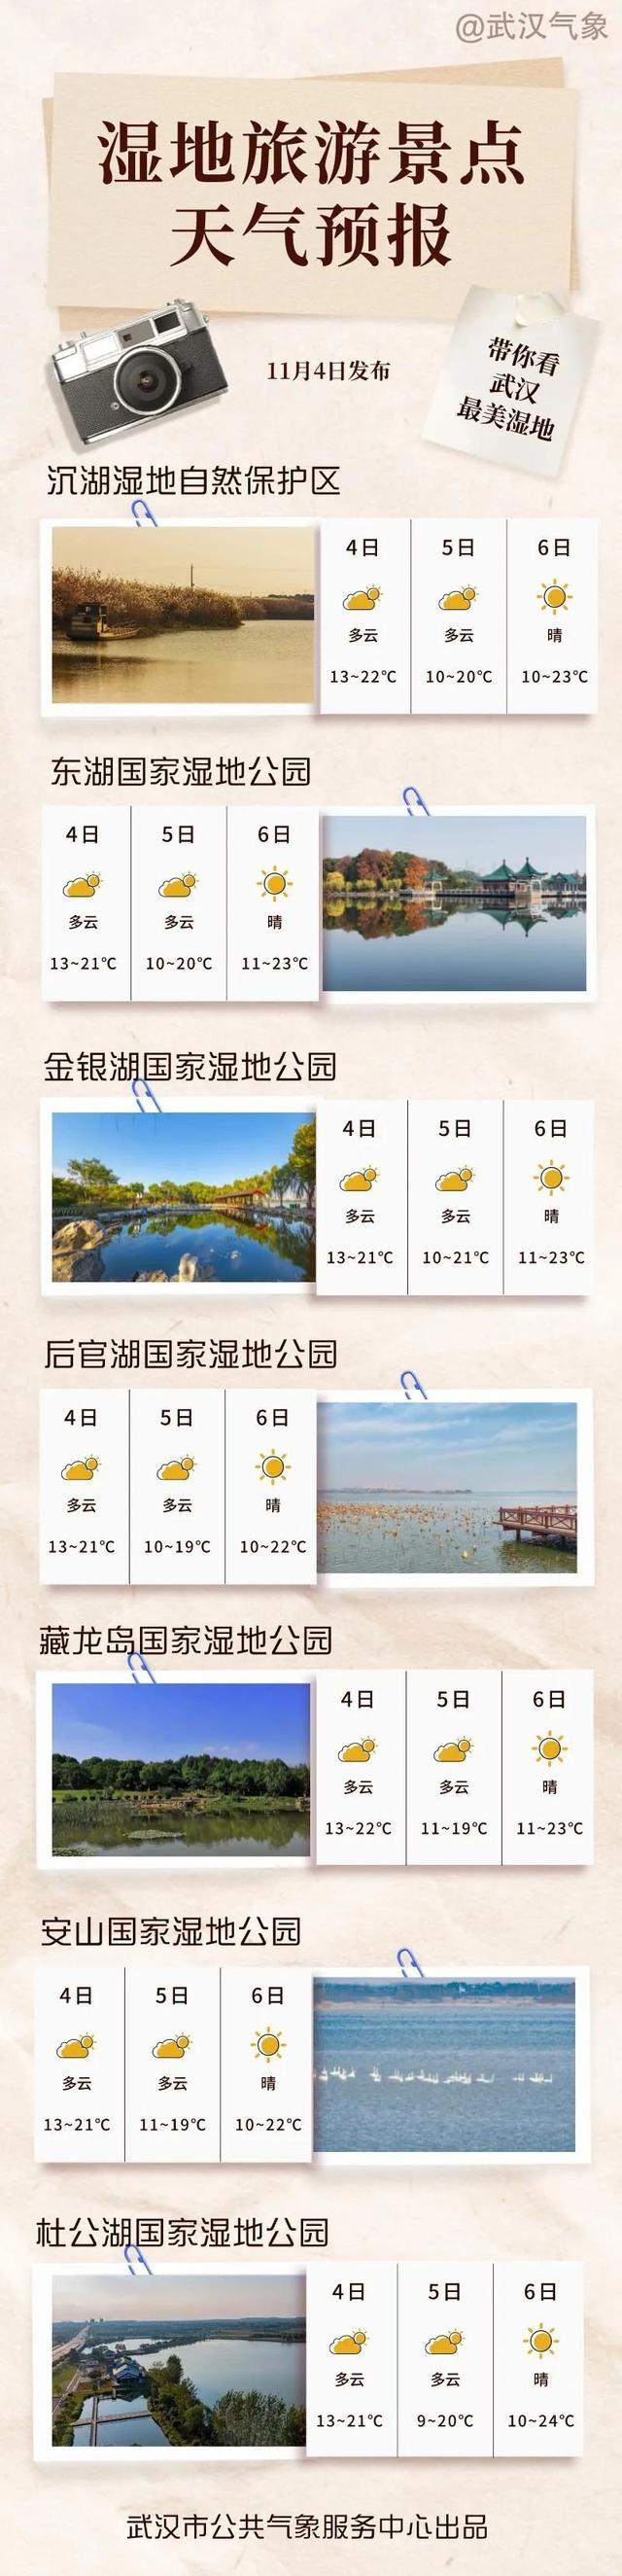 湿地大会明日开幕！一览武汉各大湿地旅游景点天气情况